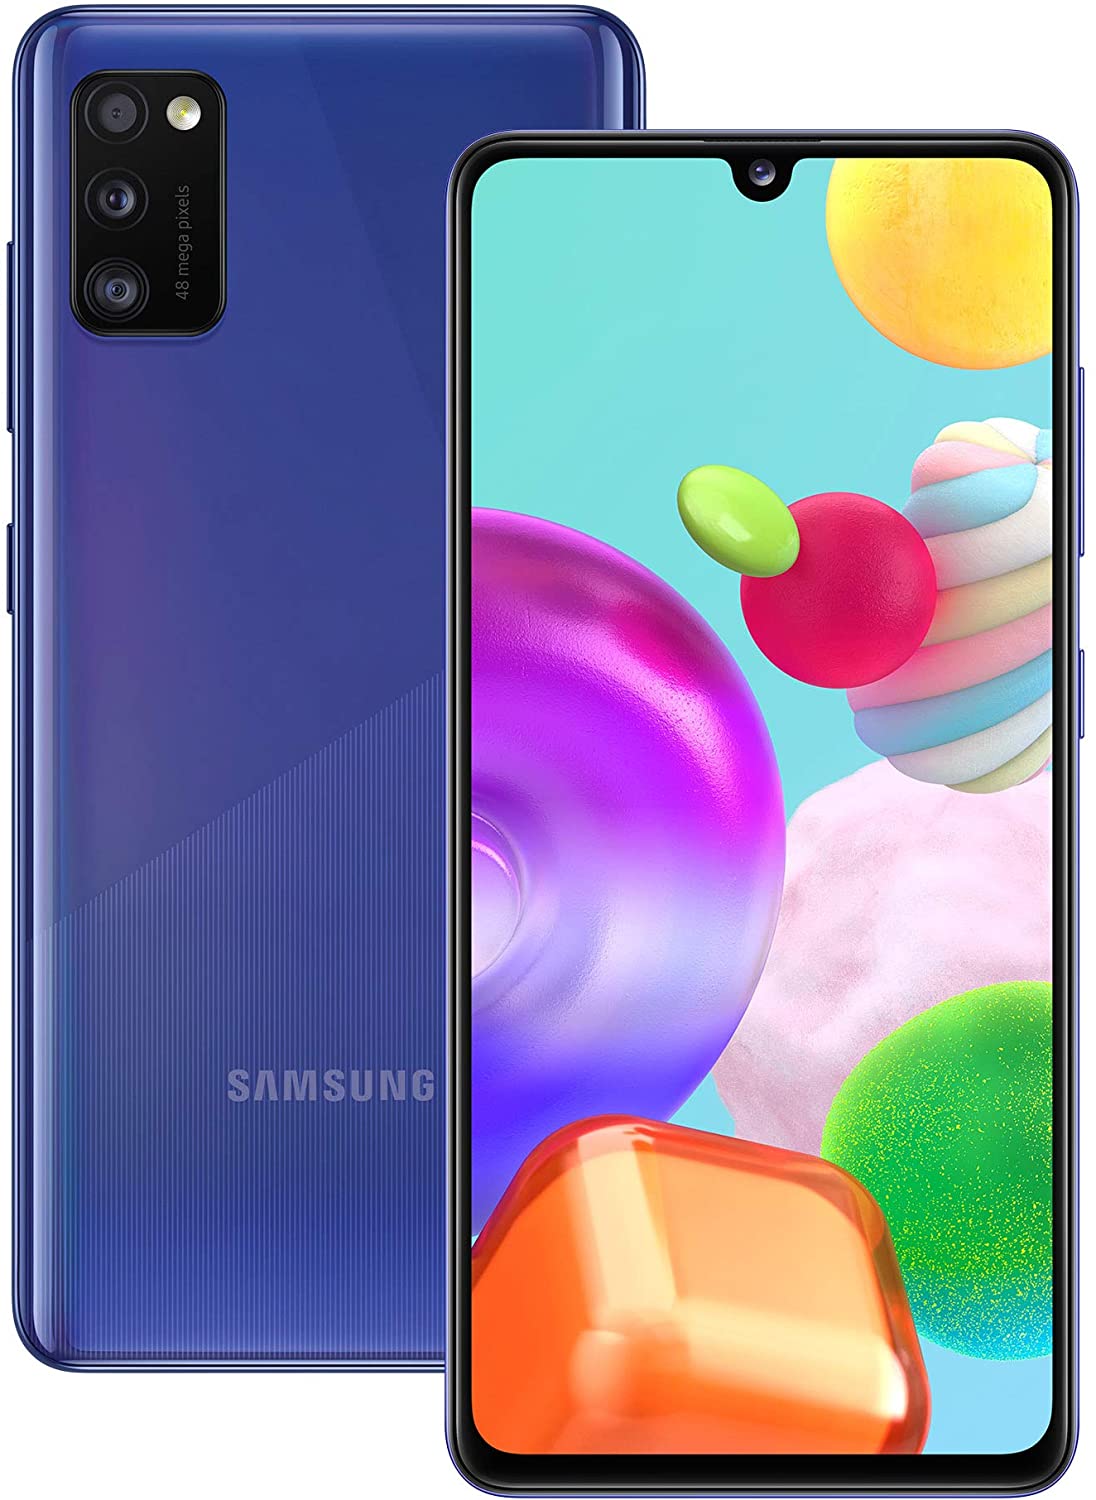 Samsung Galaxy A41 64GB Dual-SIM Prism Crush Blue - Unlocked